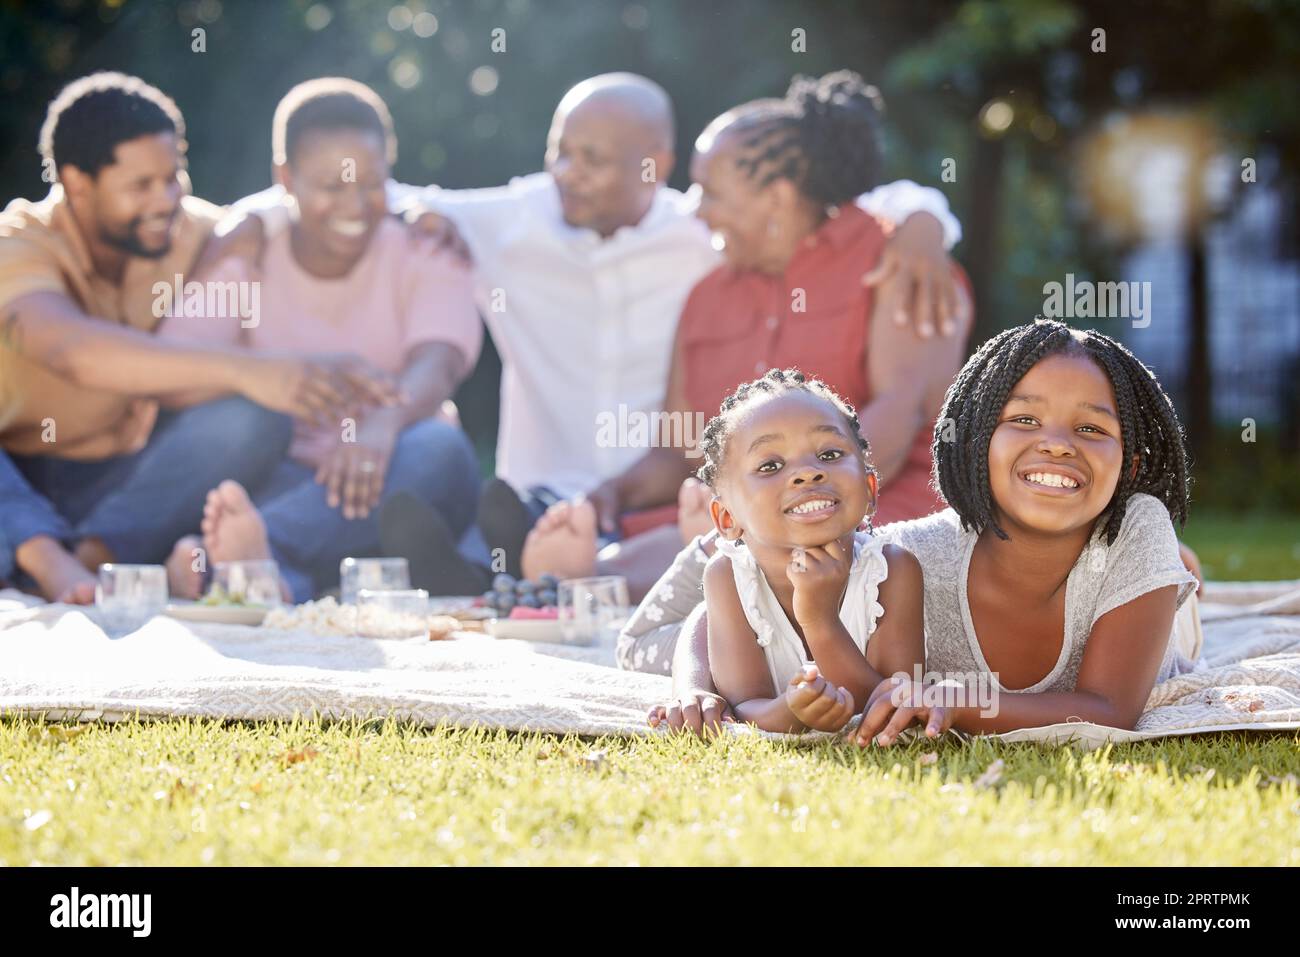 Speisen, Getränke und ein Familienpicknick im Park mit Kindern, Eltern und Großeltern. Männer, Frauen und Kinder entspannen sich in der Natur. Essen, Trinken und Lachen, eine glückliche schwarze Familie draußen mit Mädchen. Stockfoto